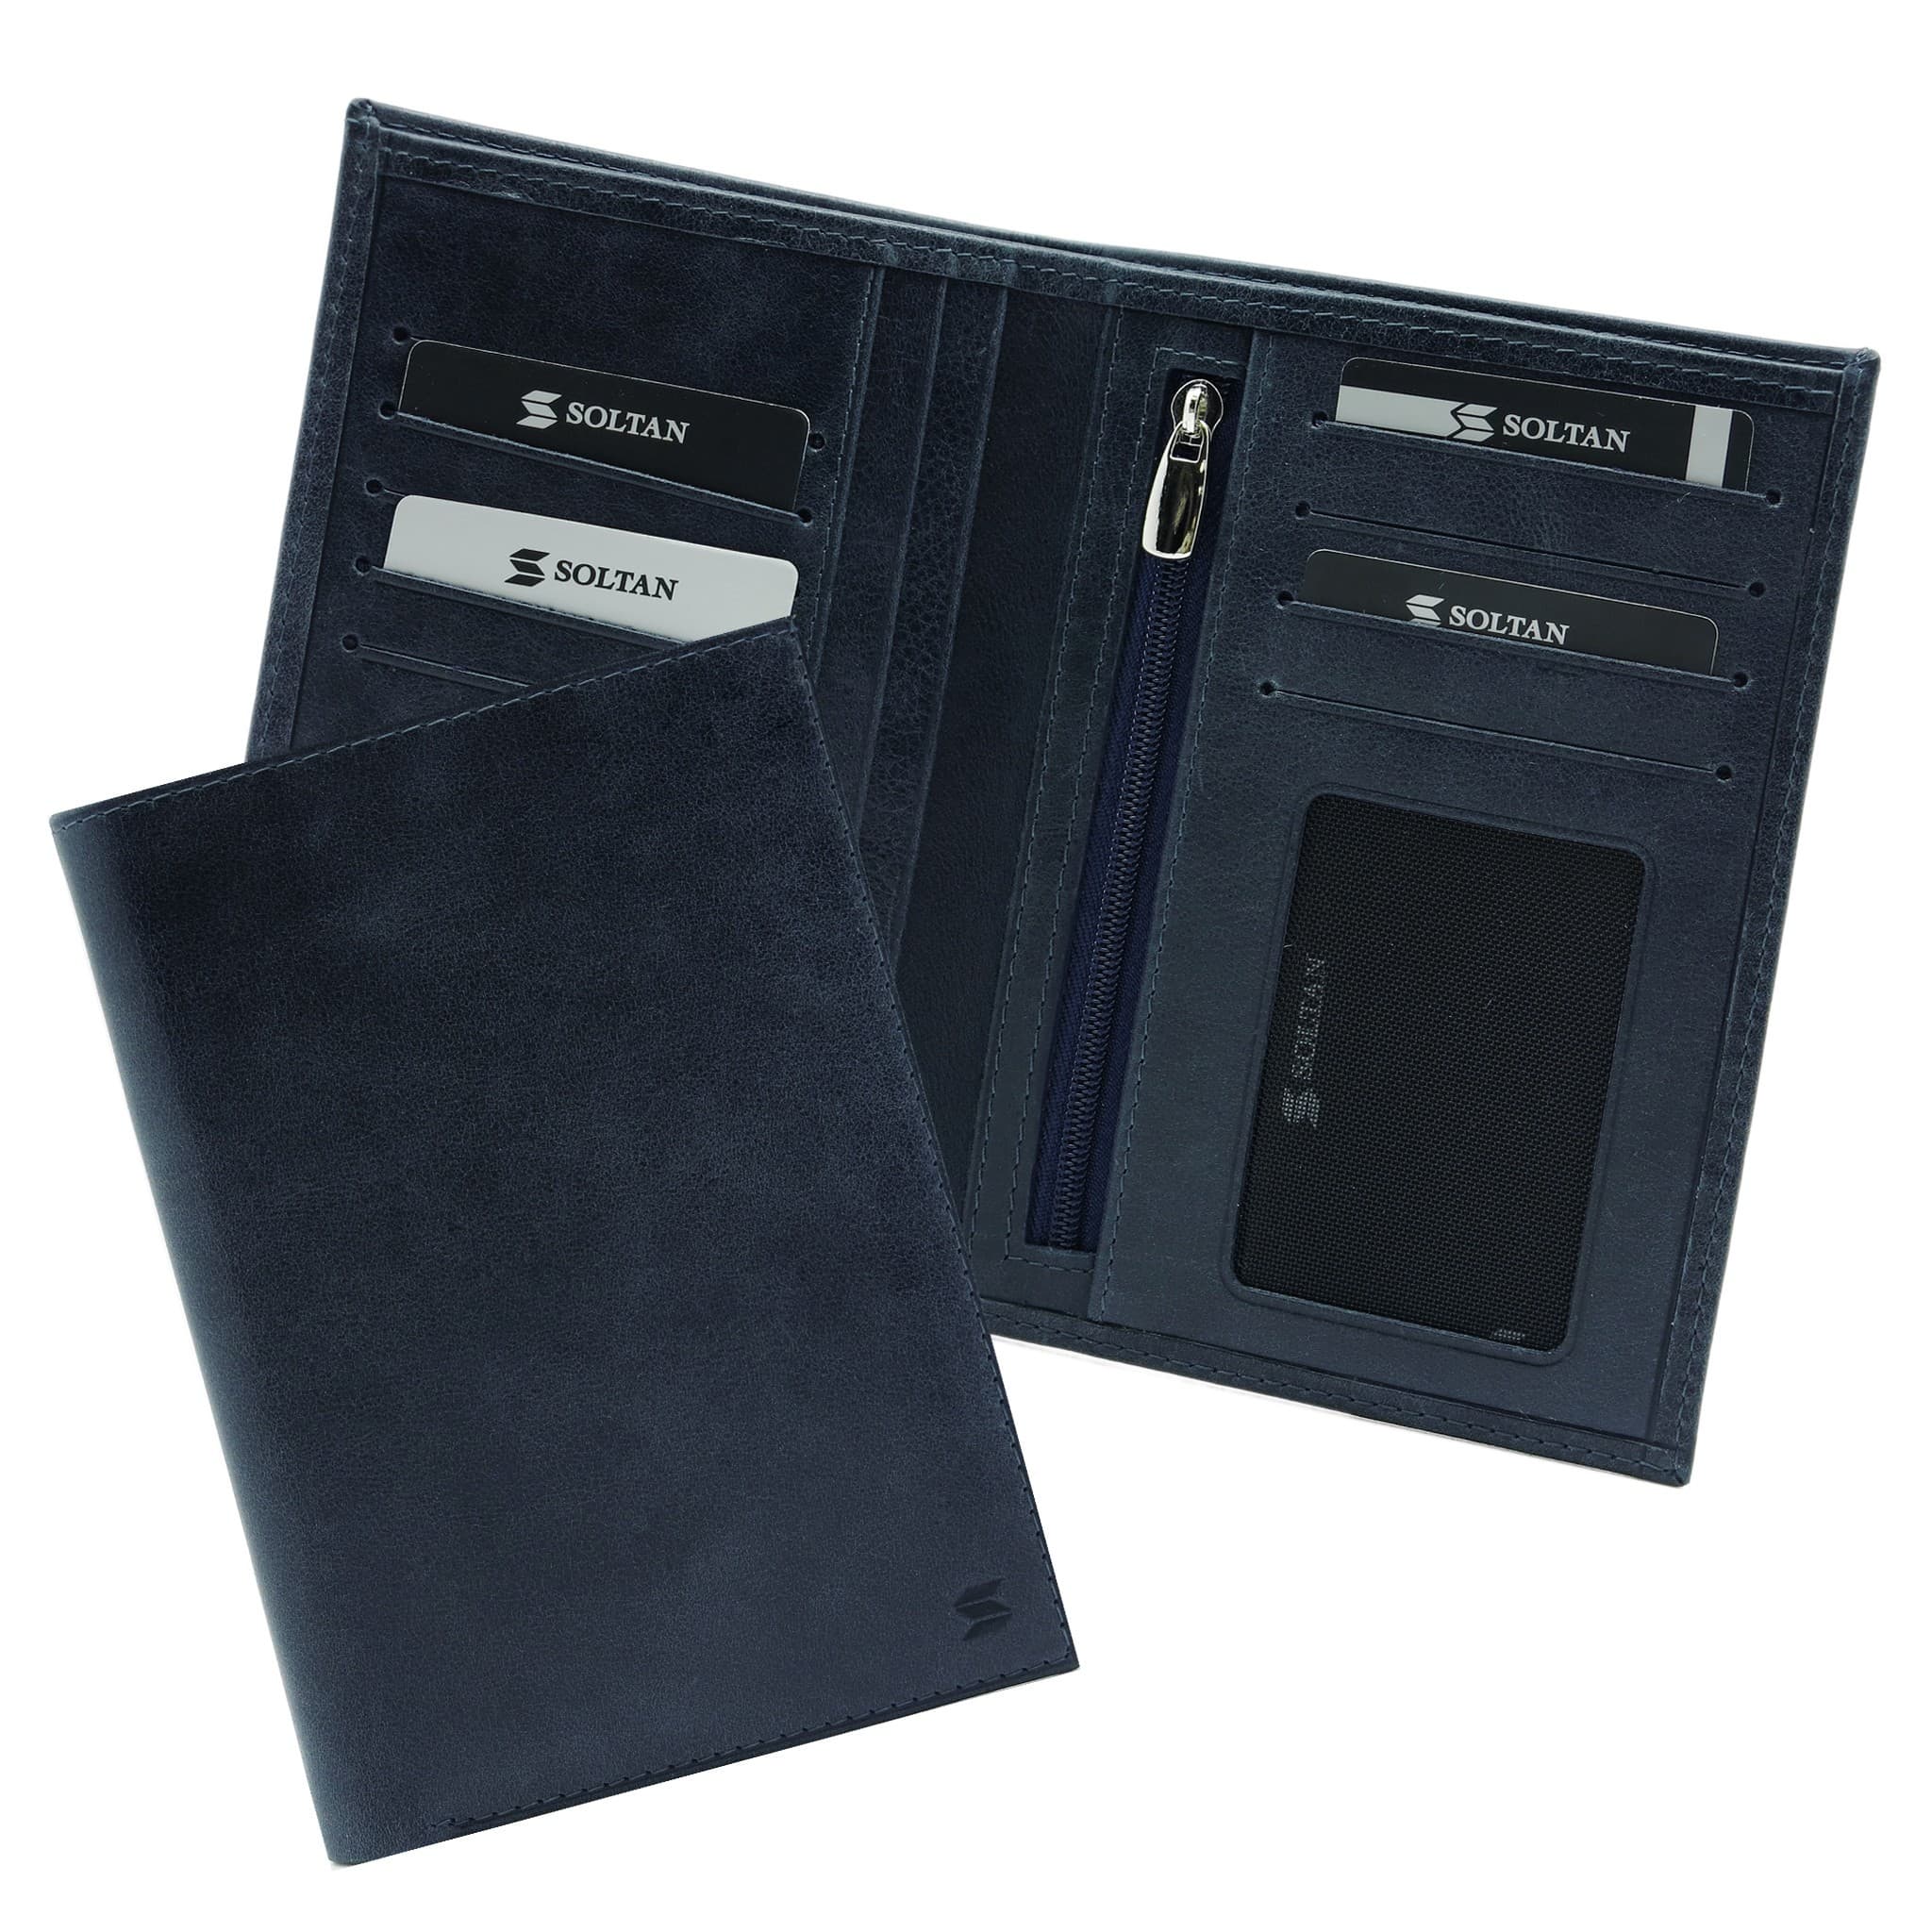 Синее кожаное портмоне с отделением для паспорта и автодокументов SOLTAN 241 11 17